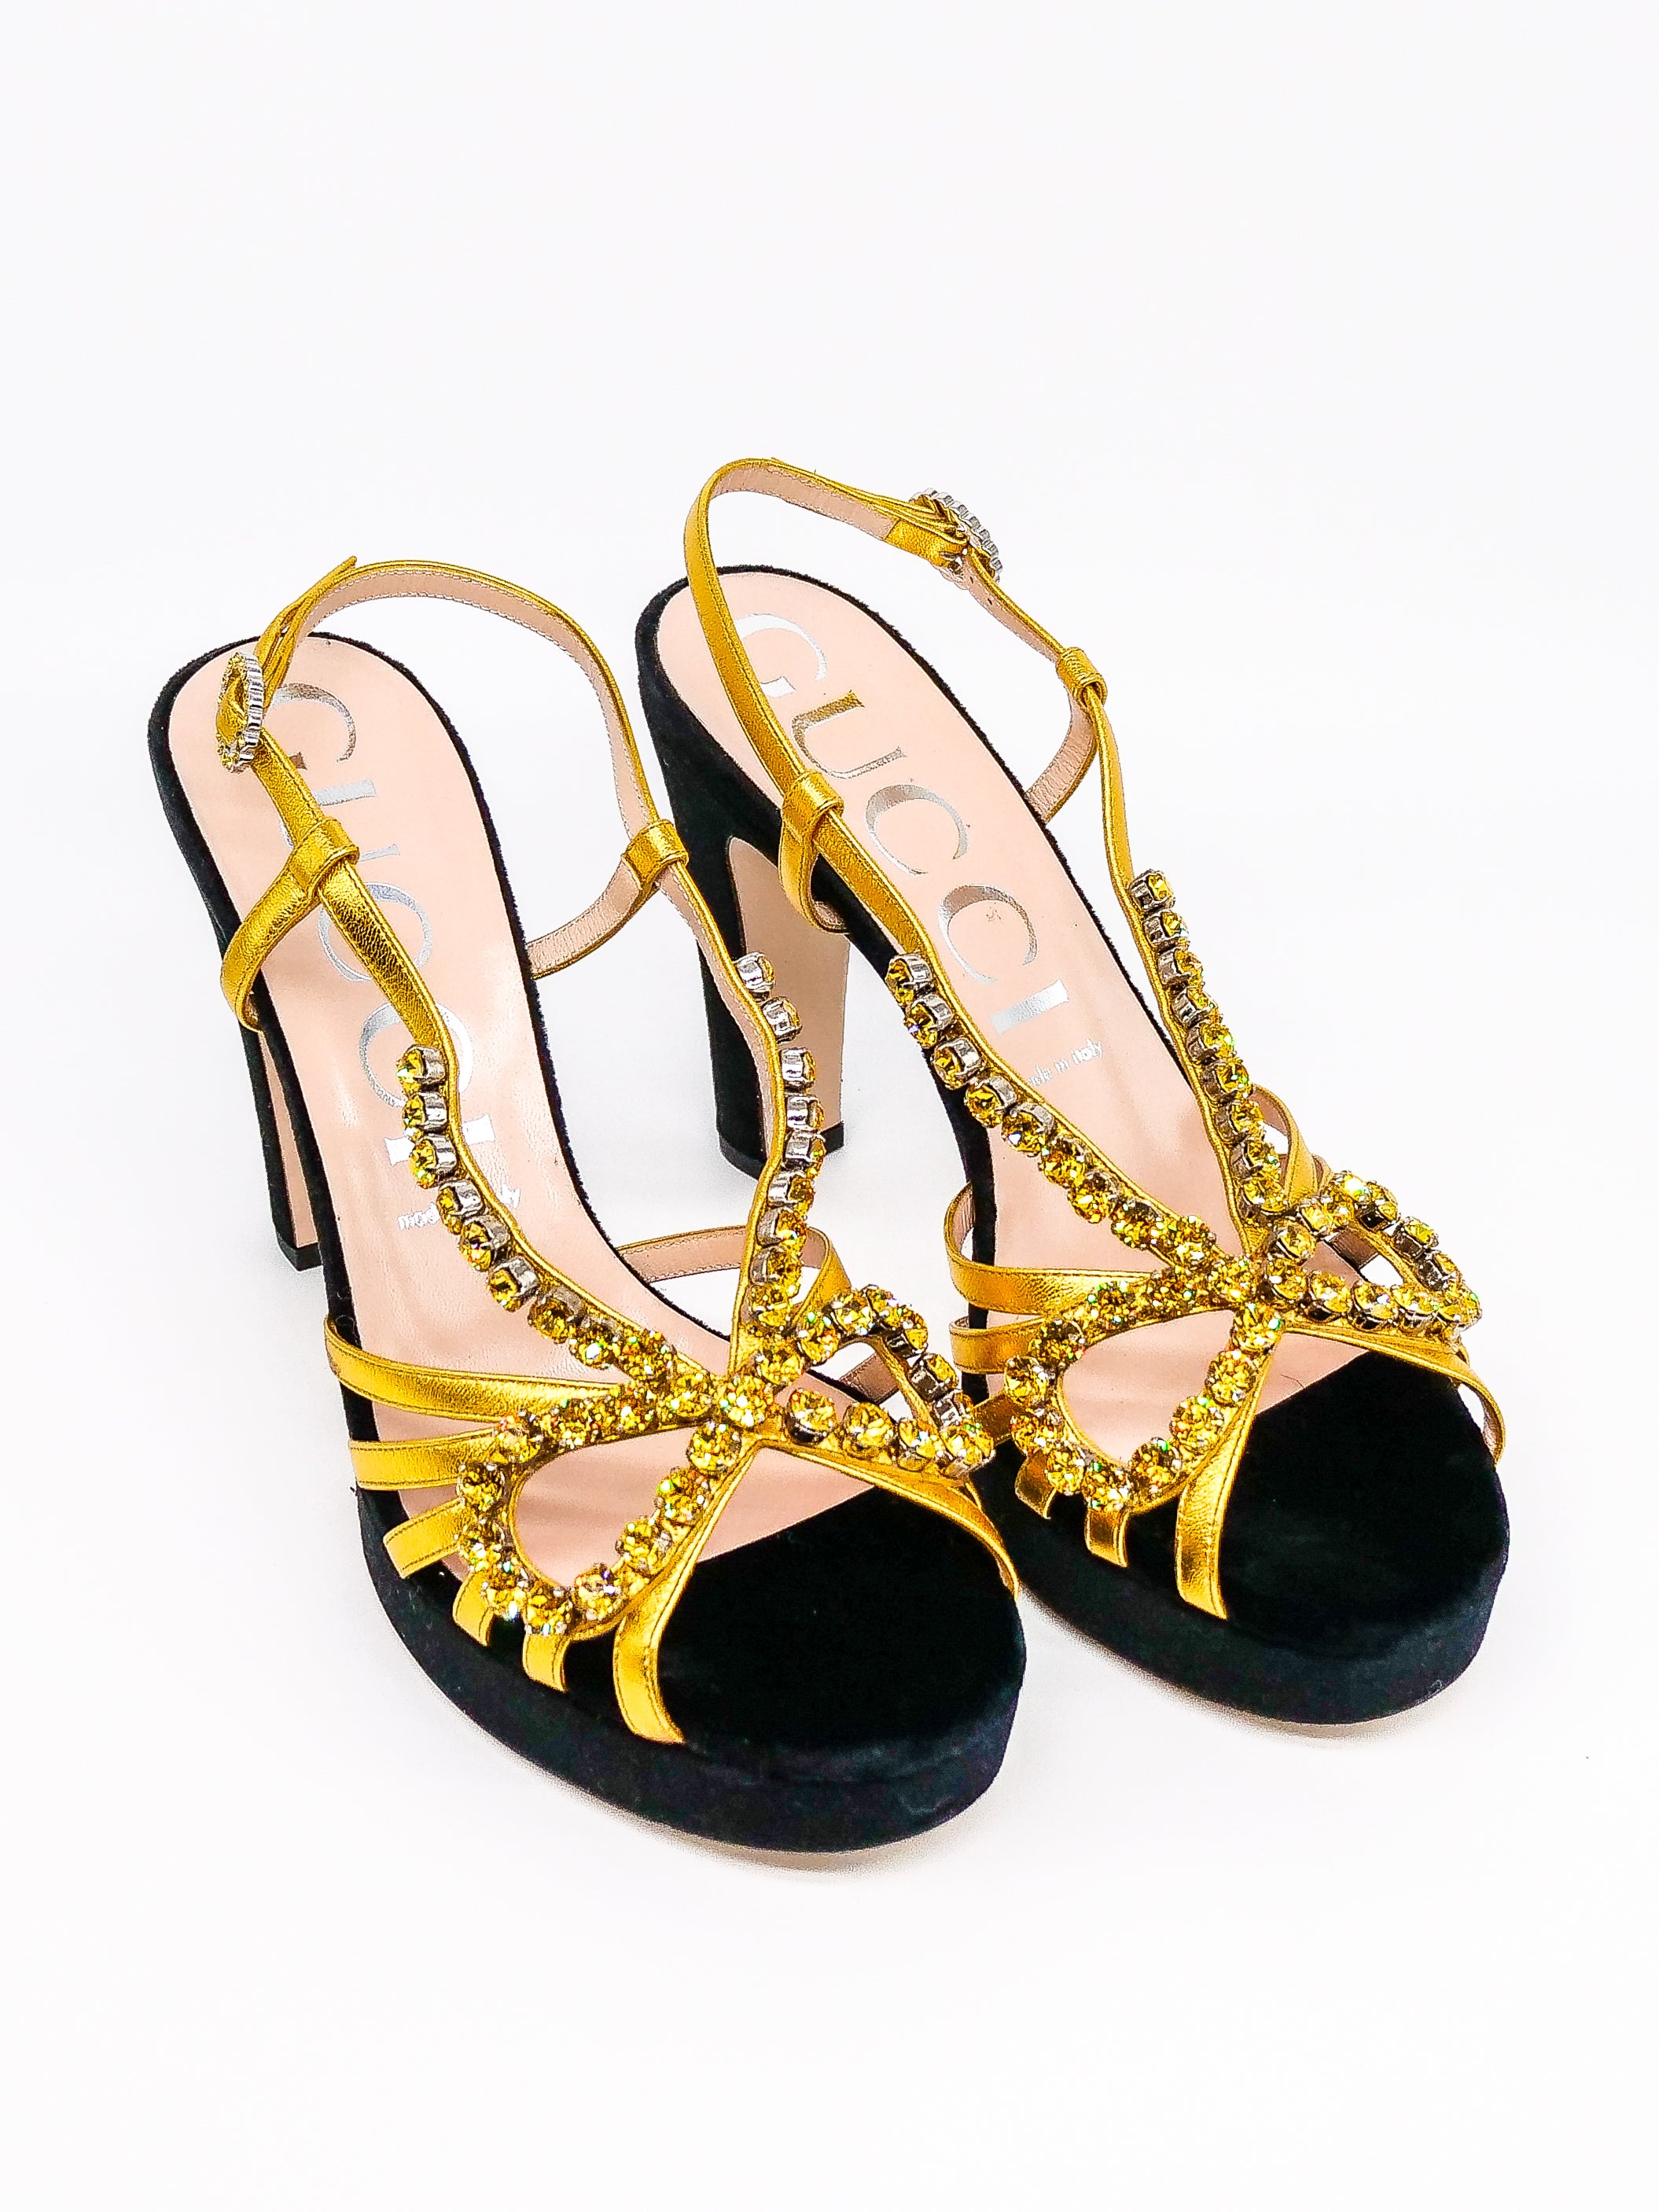 Gucci Zephyra Crystal Embellished Platform Sandals